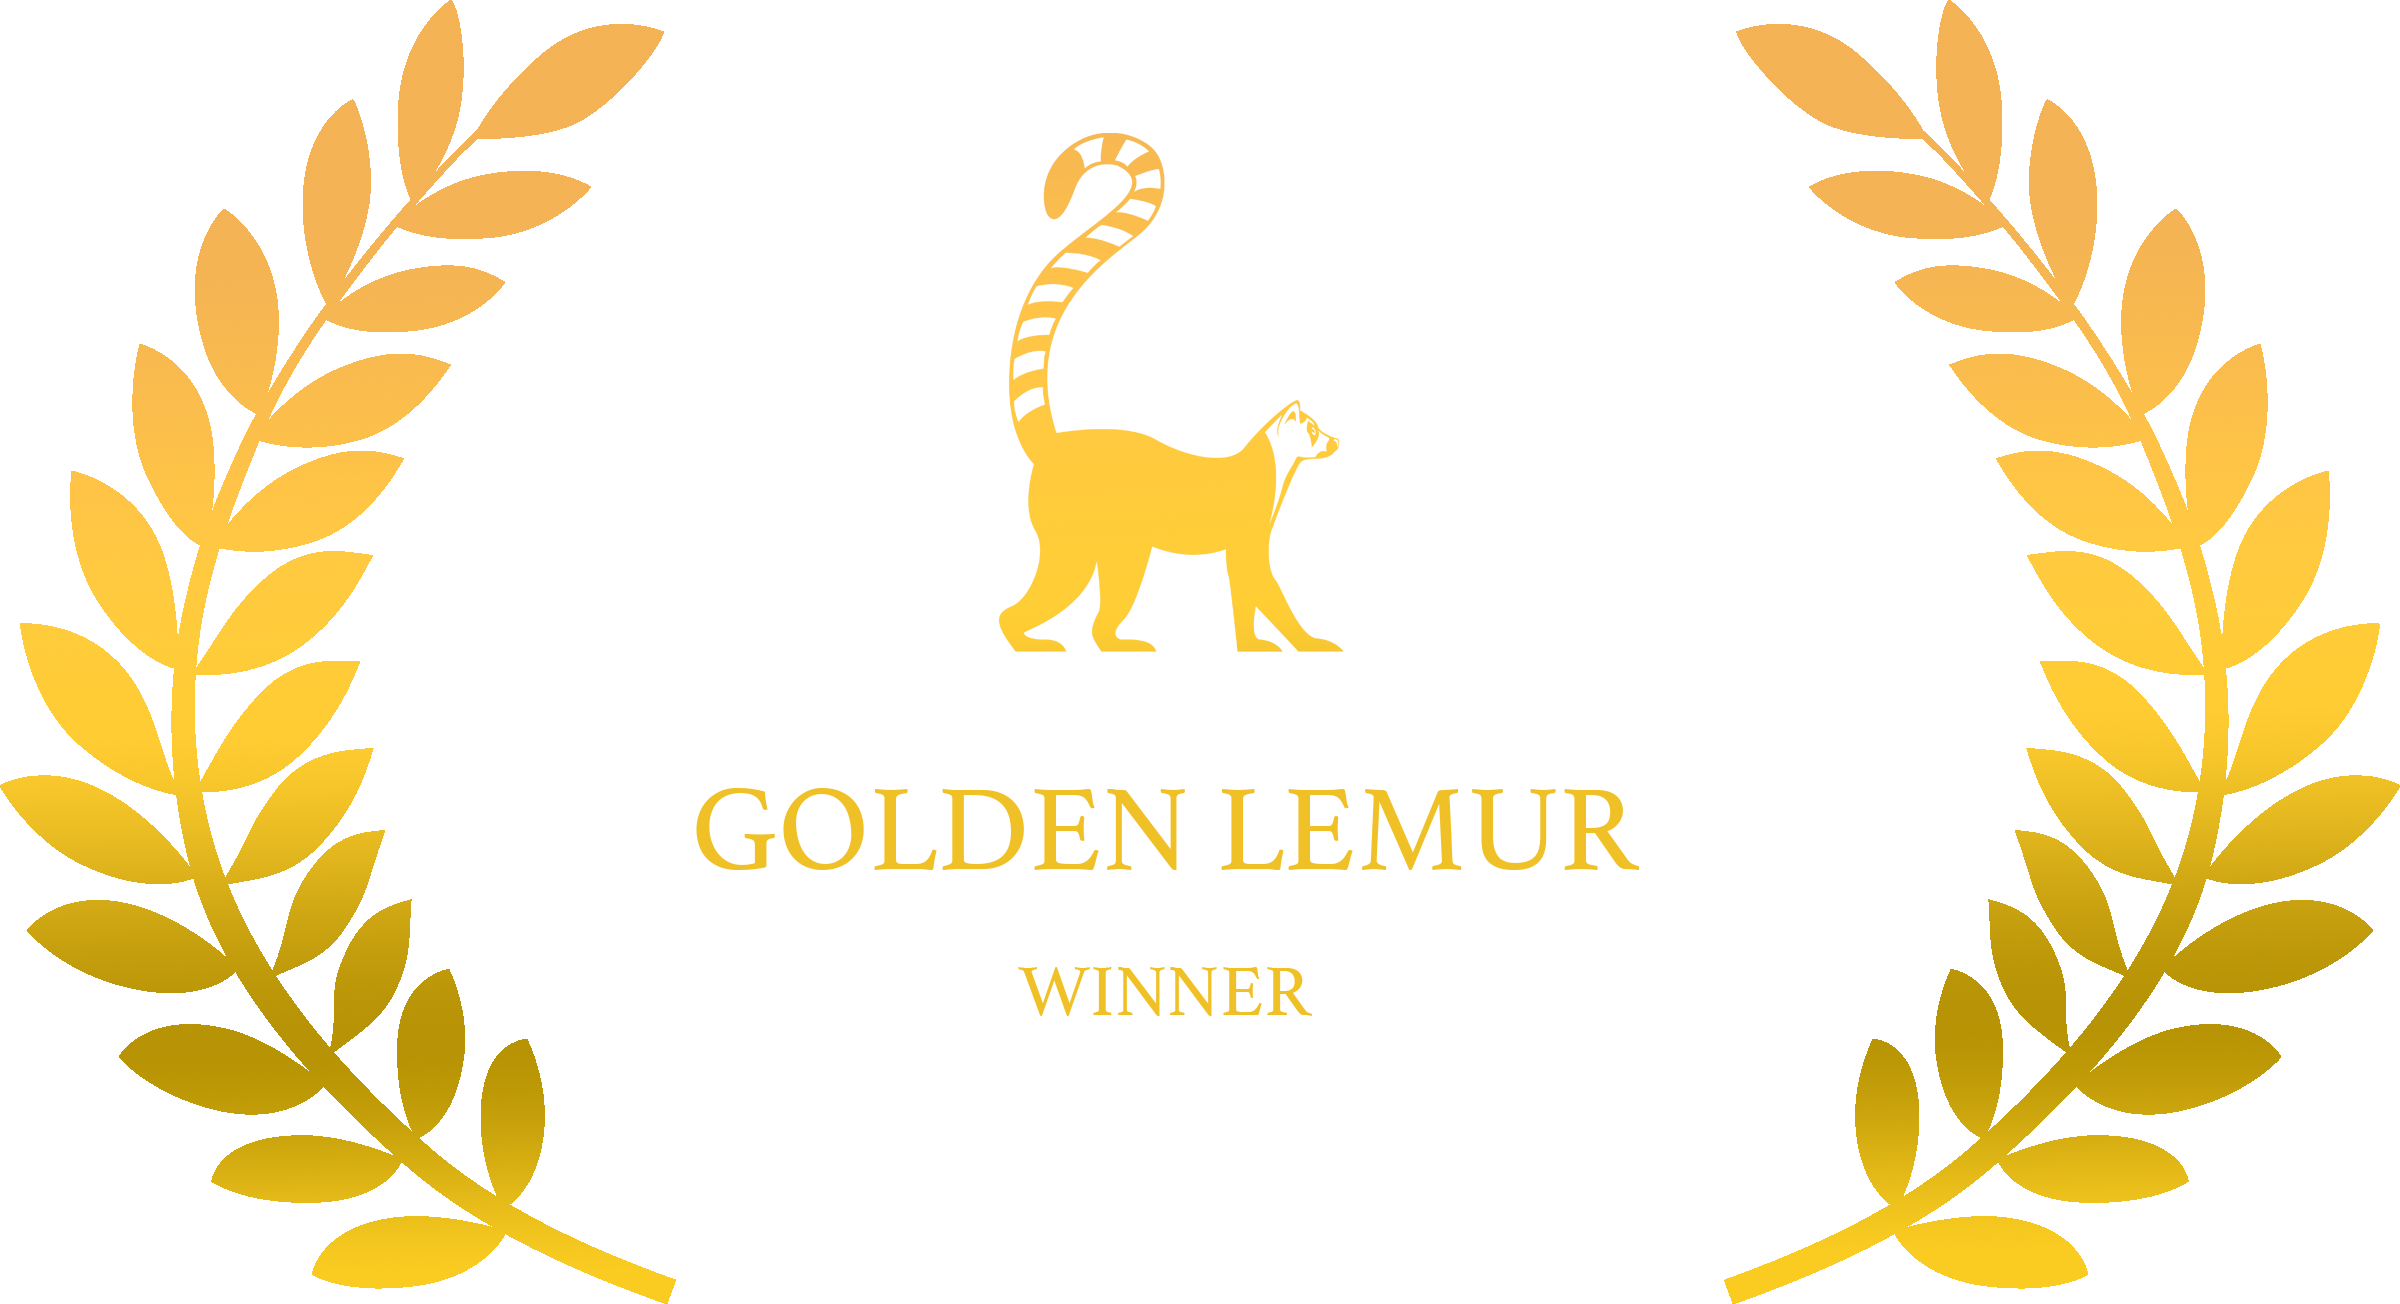 golden Lemur International Film Festival winner laurels